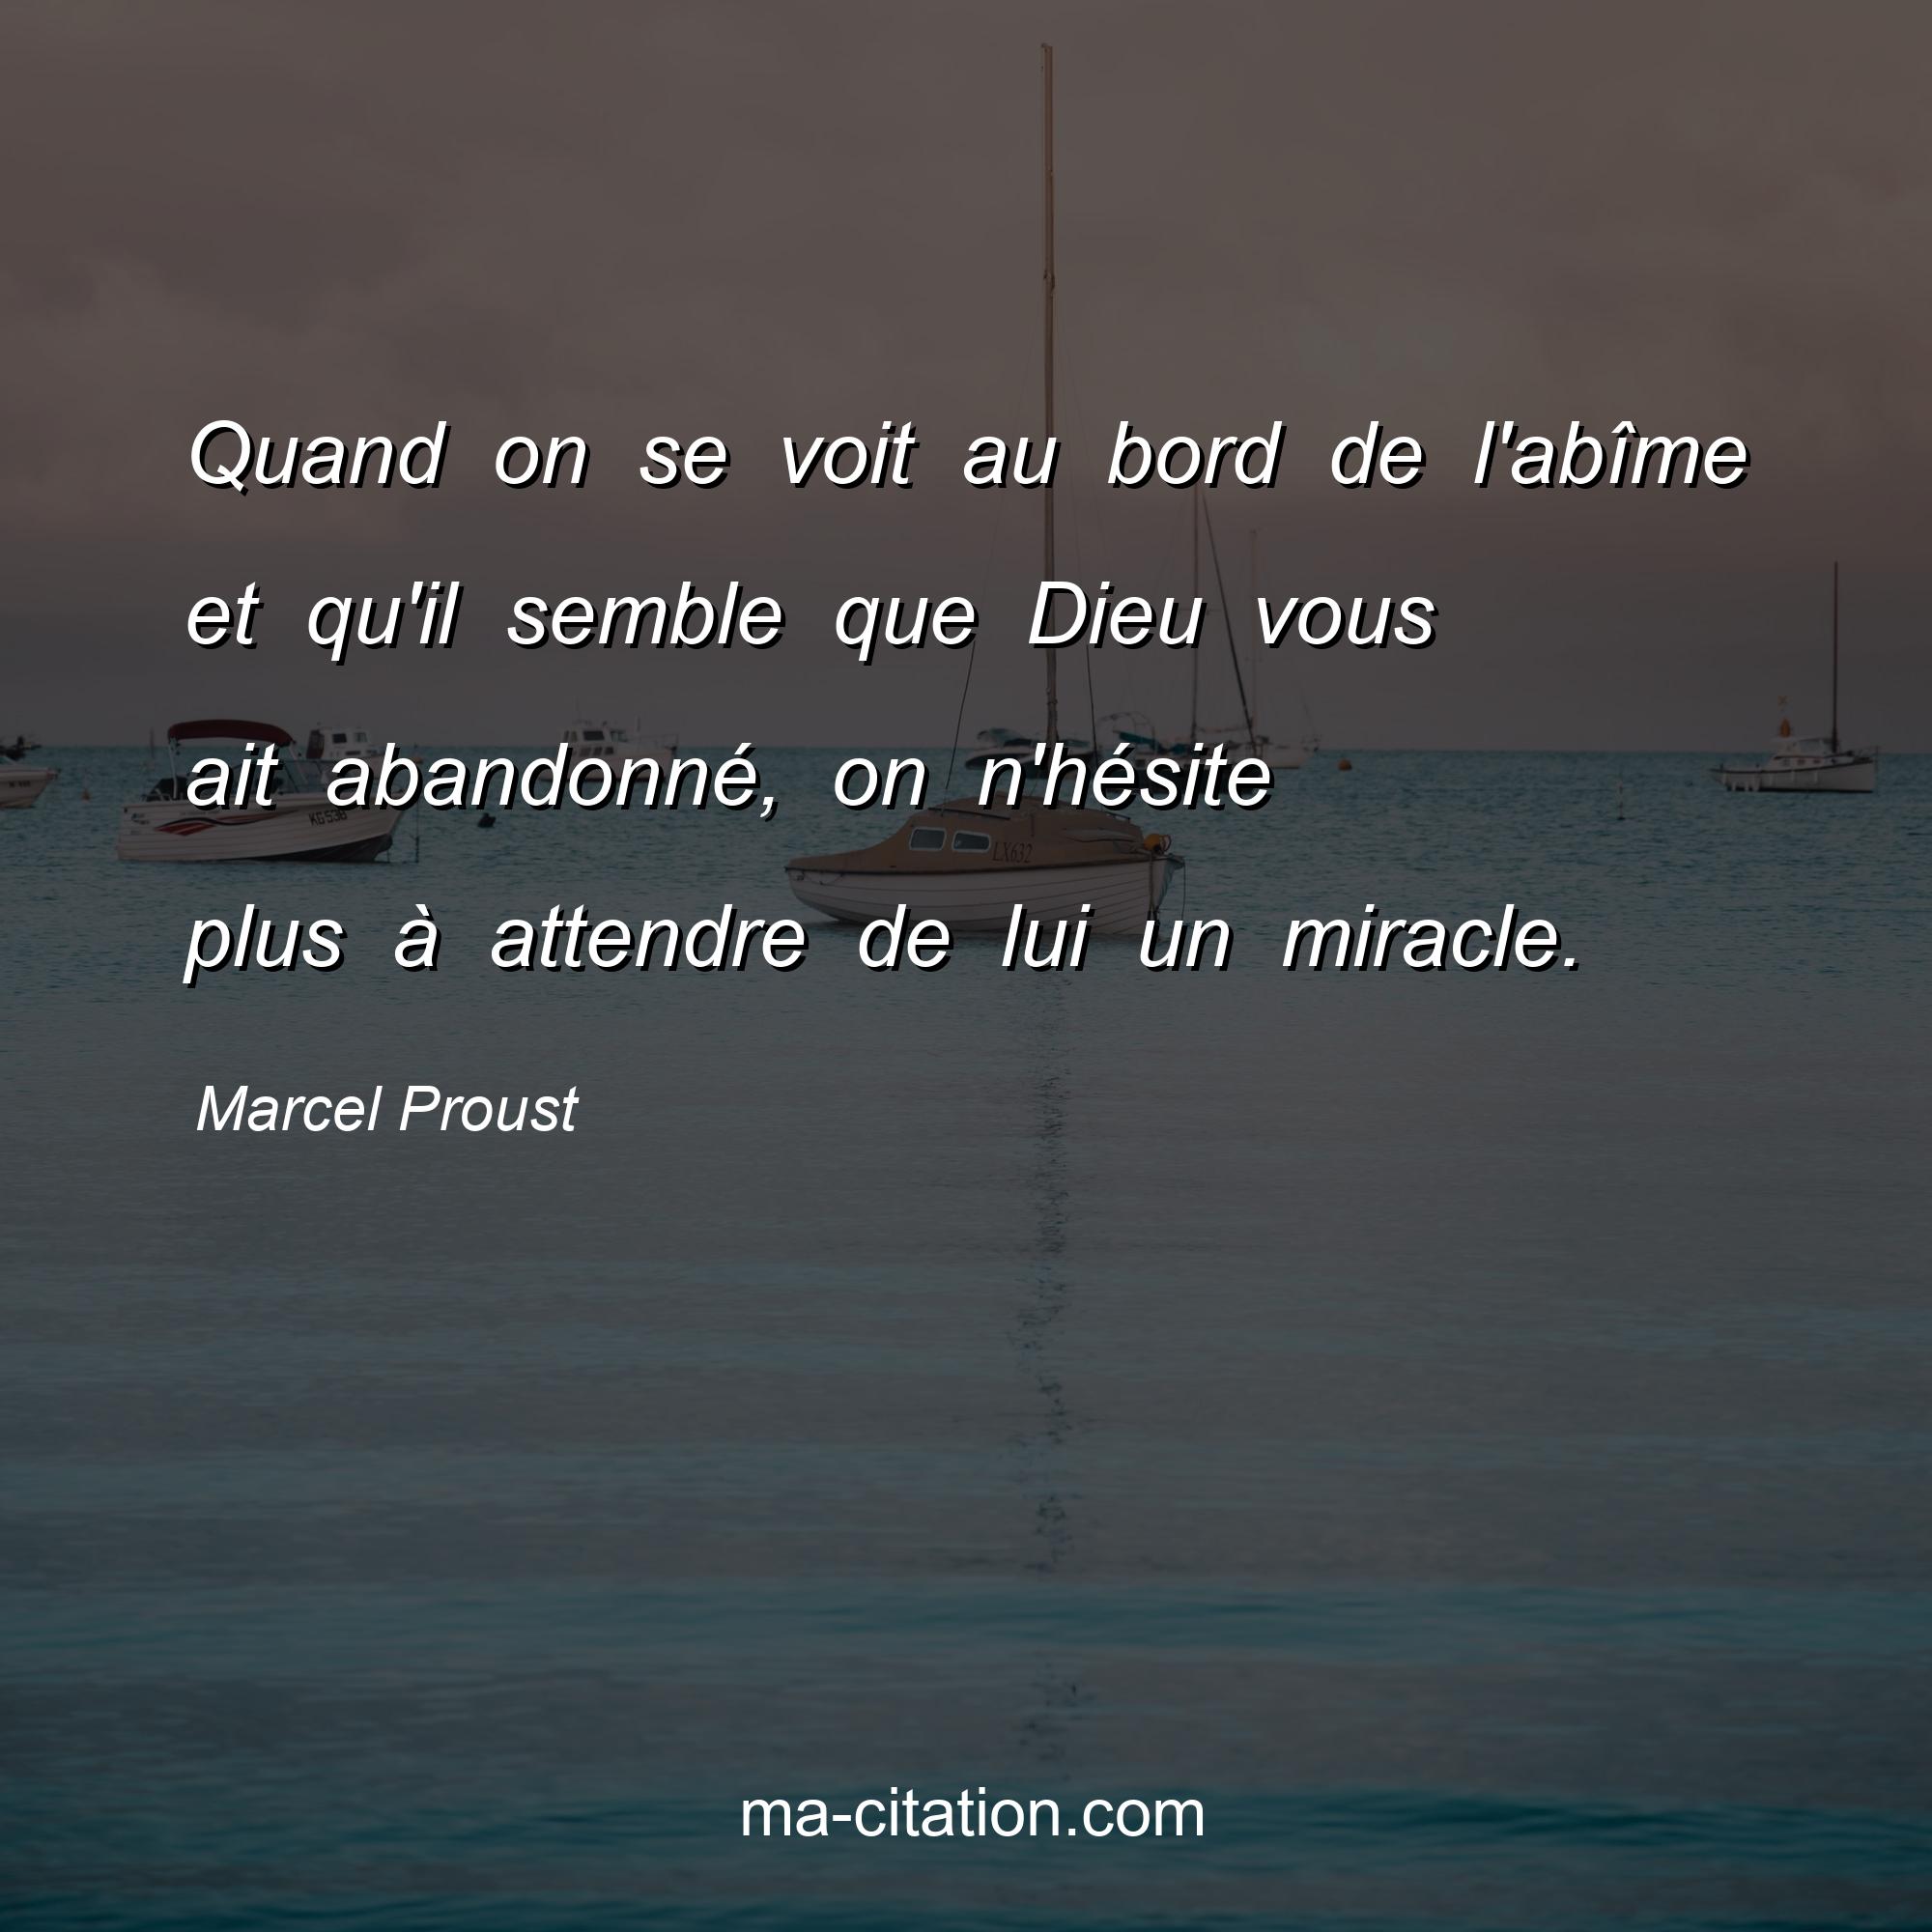 Marcel Proust : Quand on se voit au bord de l'abîme et qu'il semble que Dieu vous ait abandonné, on n'hésite plus à attendre de lui un miracle.